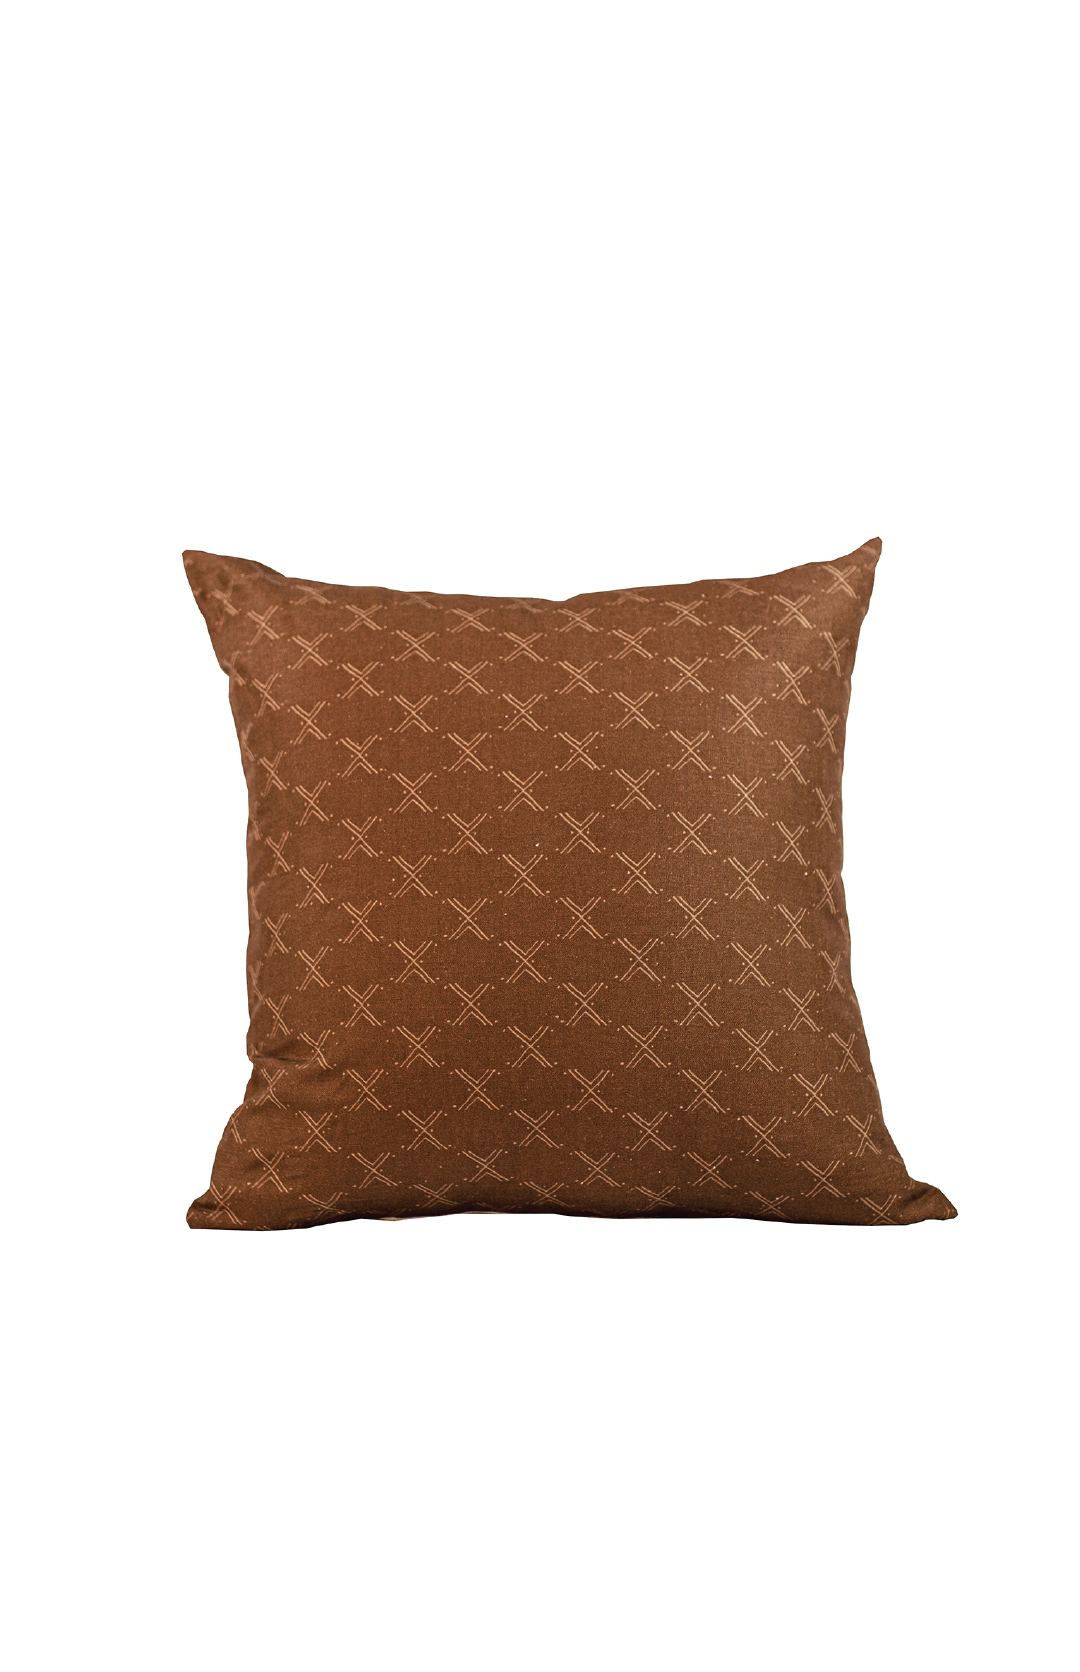 brown throw pillow